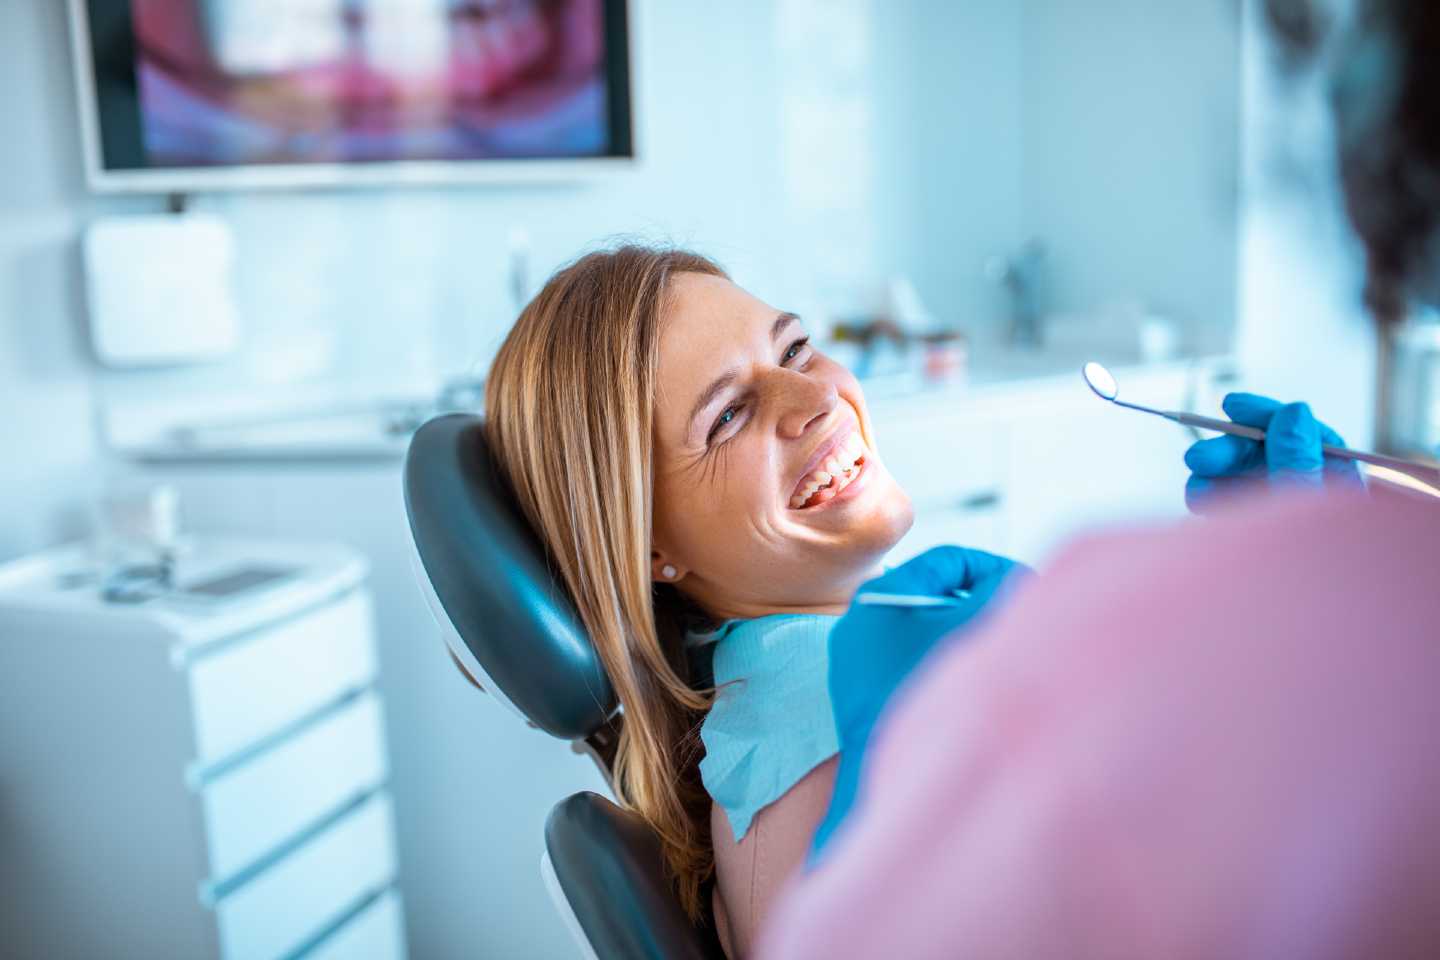 Frau lacht und sitzt auf einem Zahnarztstuhl. Ein Zahnarztspiegel wird vom Zahnarzt in der Hand gehalten.